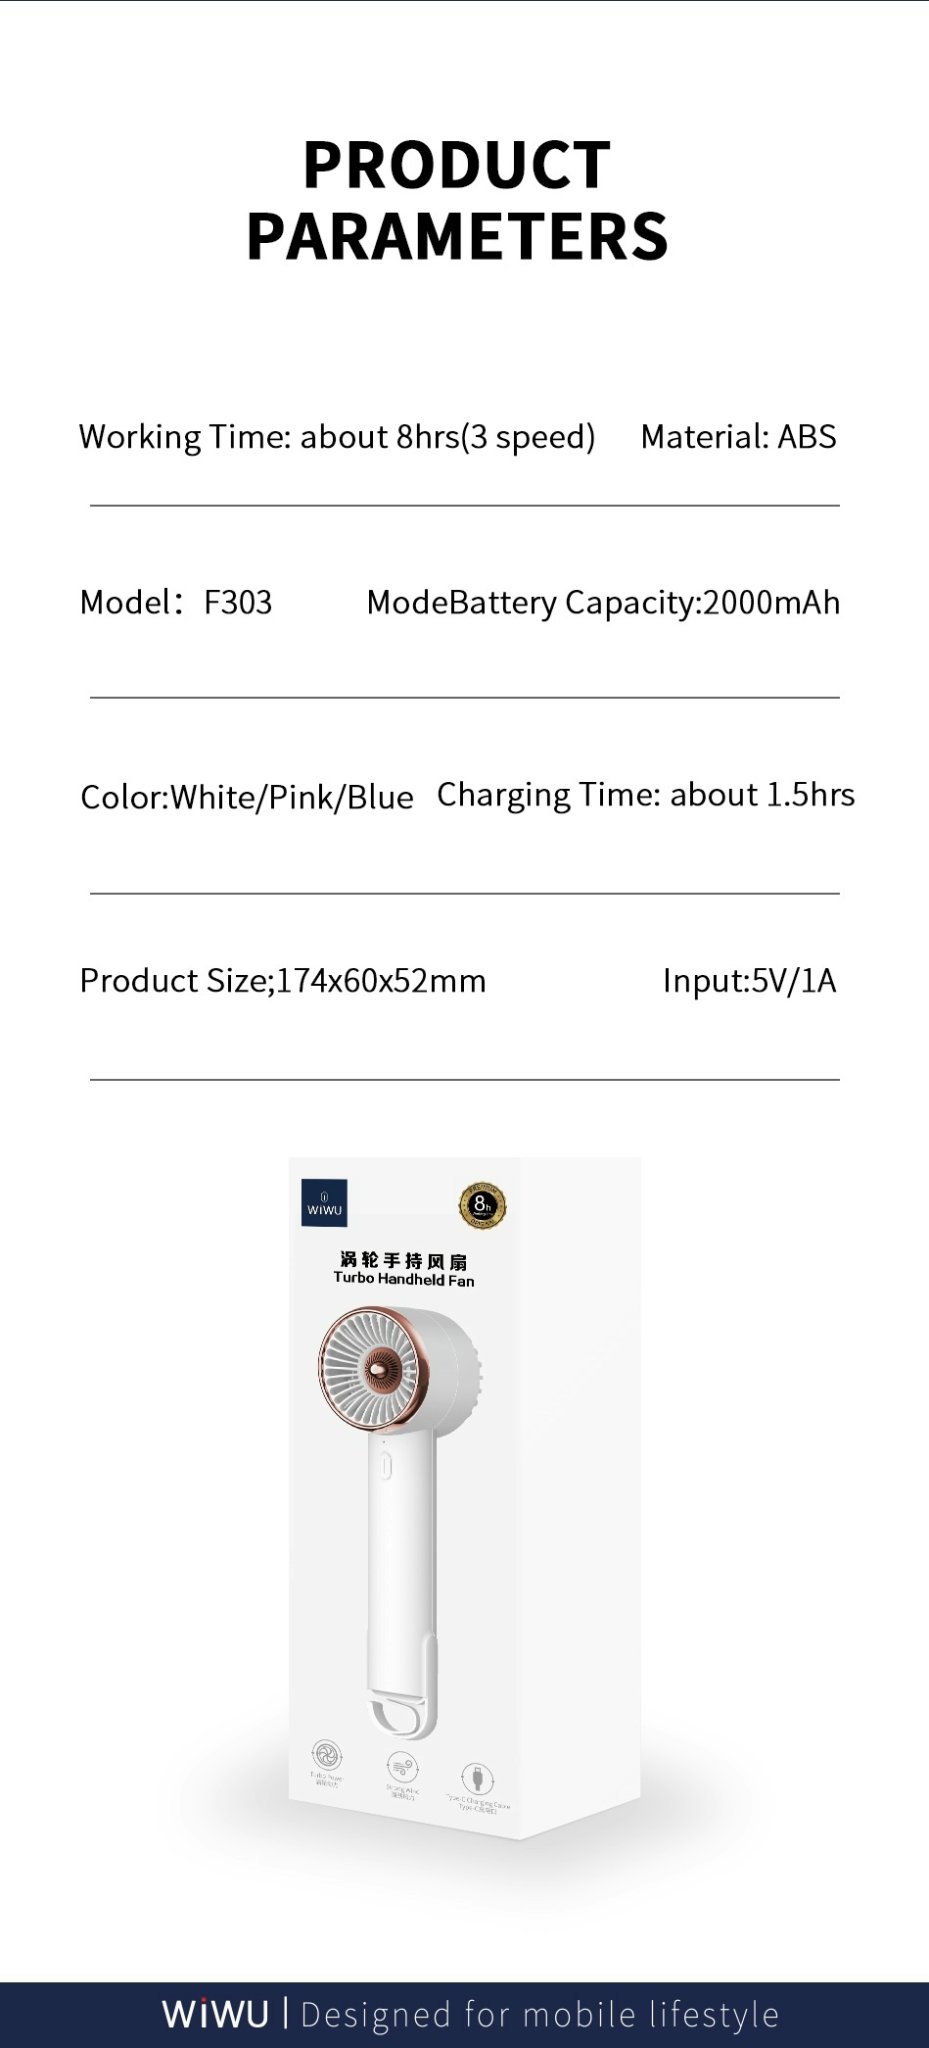 Quạt Wiwu Turbo Handheld Fan F303 quạt mini cầm tay USB được làm bằng chất liệu ABS - Hàng chính hãng